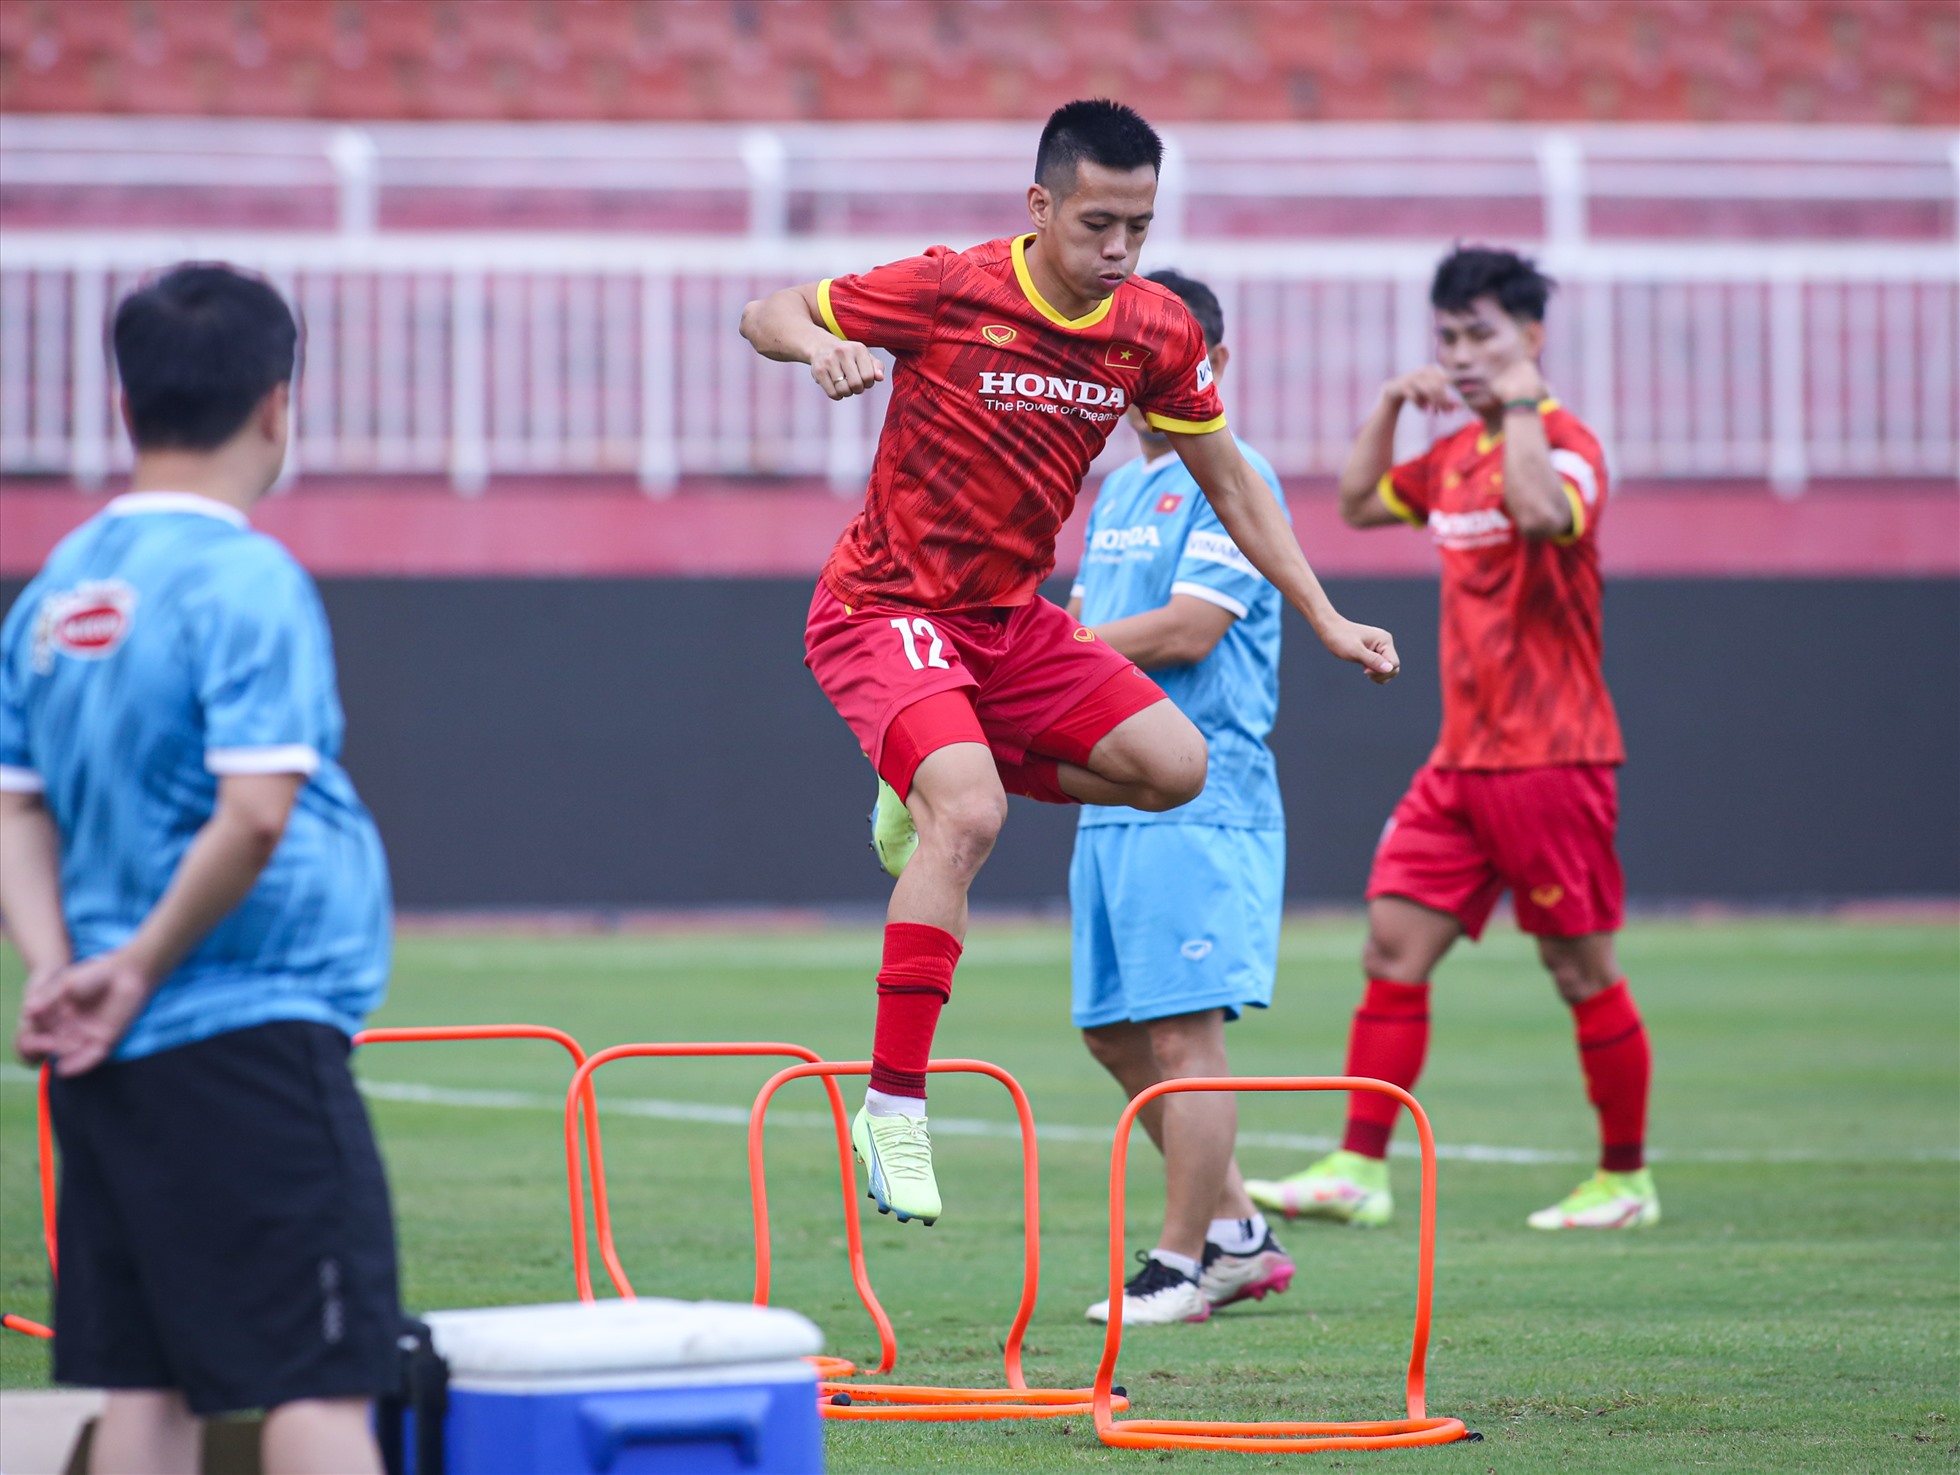 Tiện vệ Nguyễn Văn Quyết tích cực tập luyện khi được gọi tập trung đội tuyển trở lại sau 2 năm.